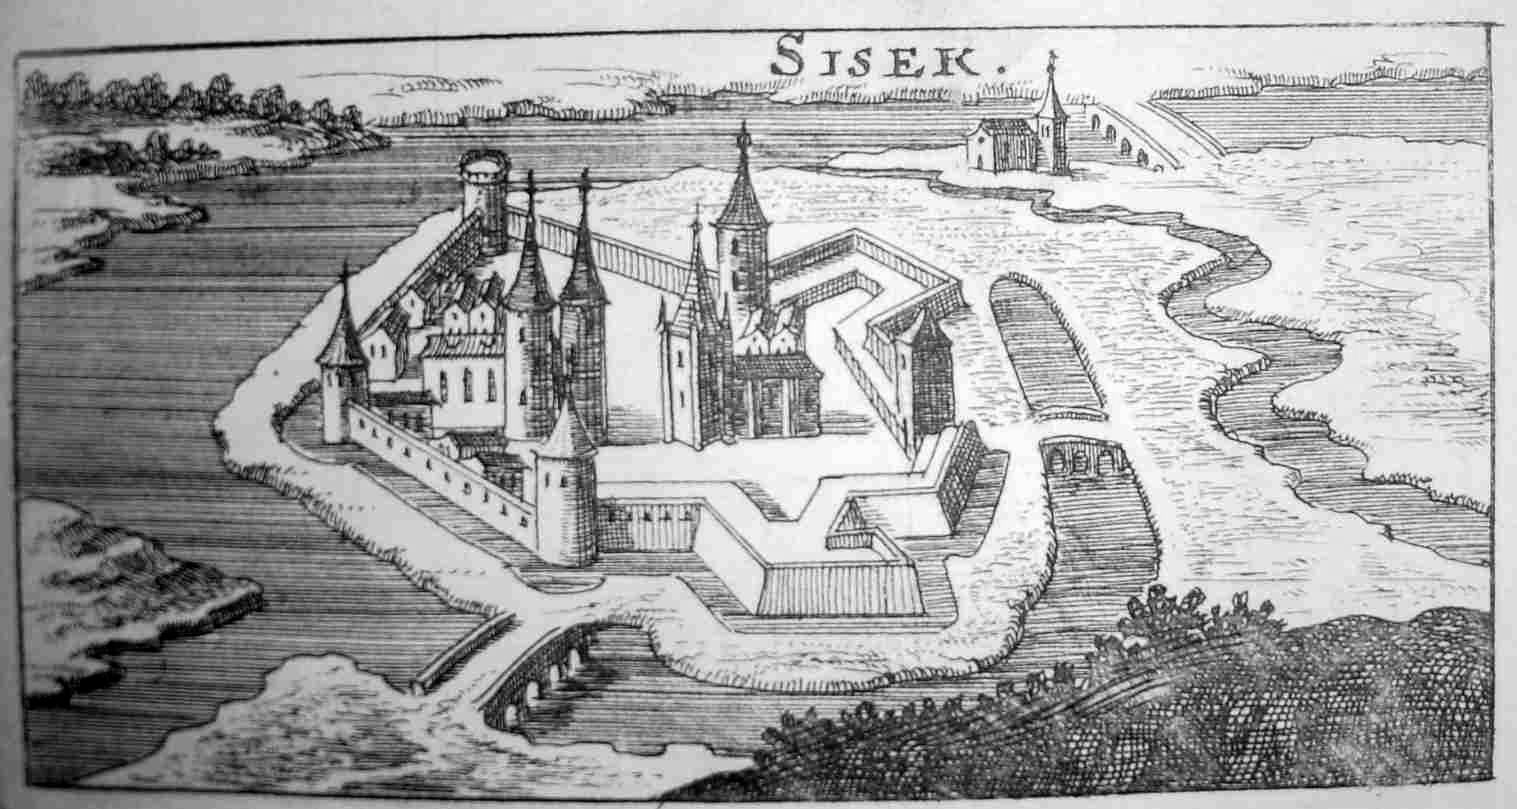 Festung Sissek